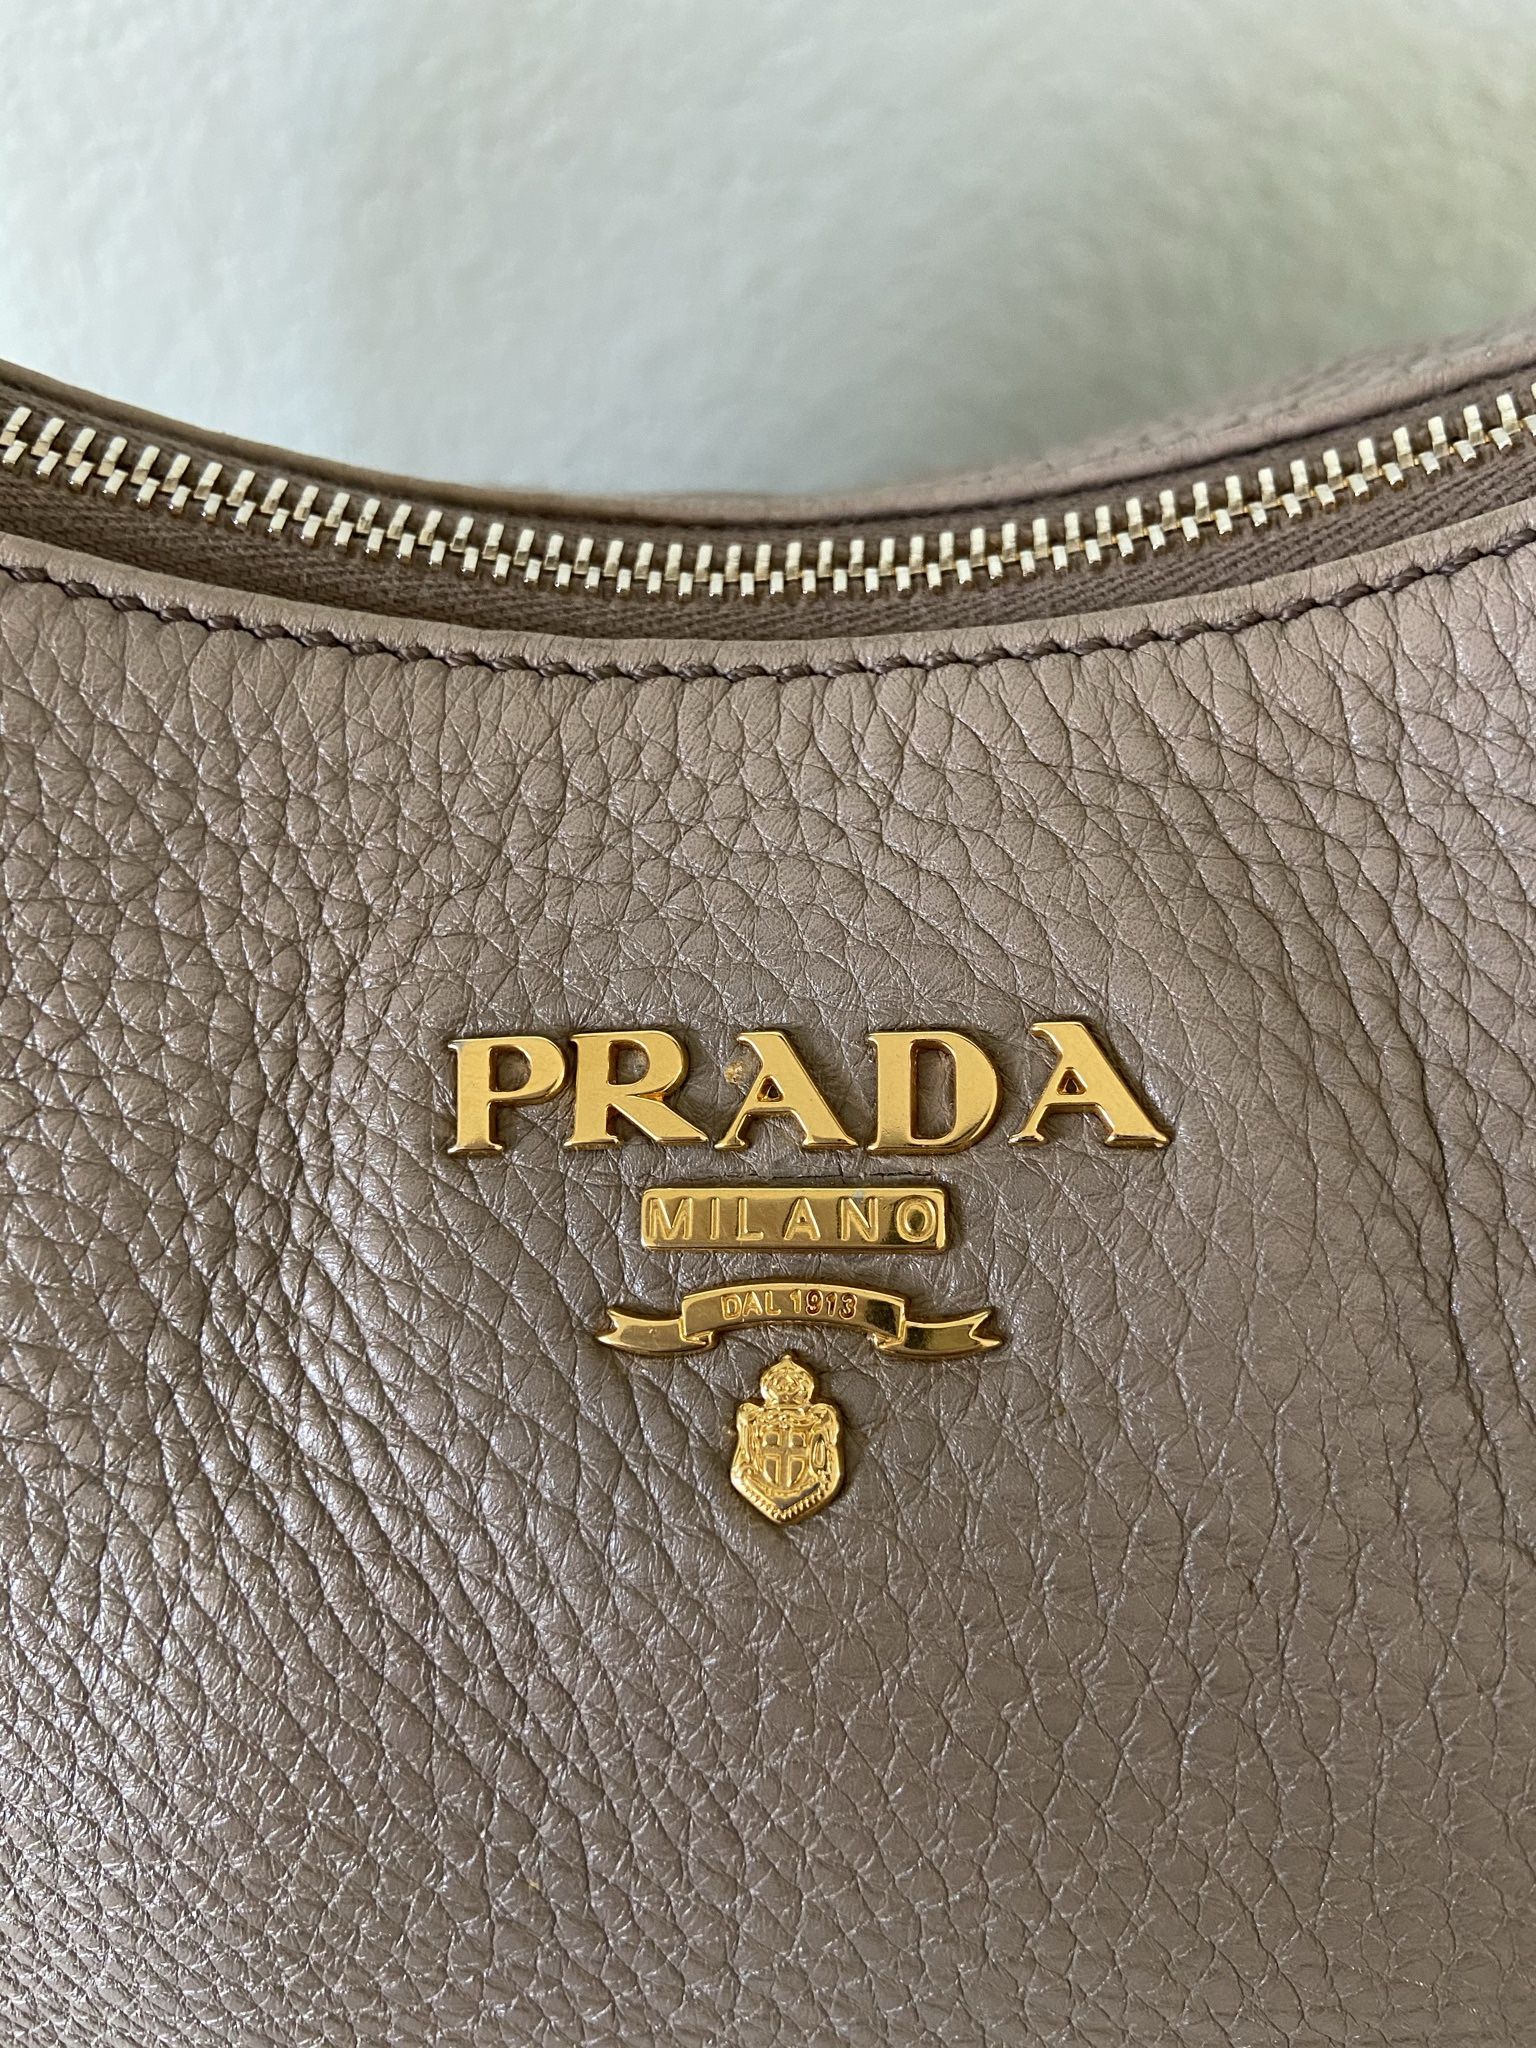 Authentic Prada Leather Bag 